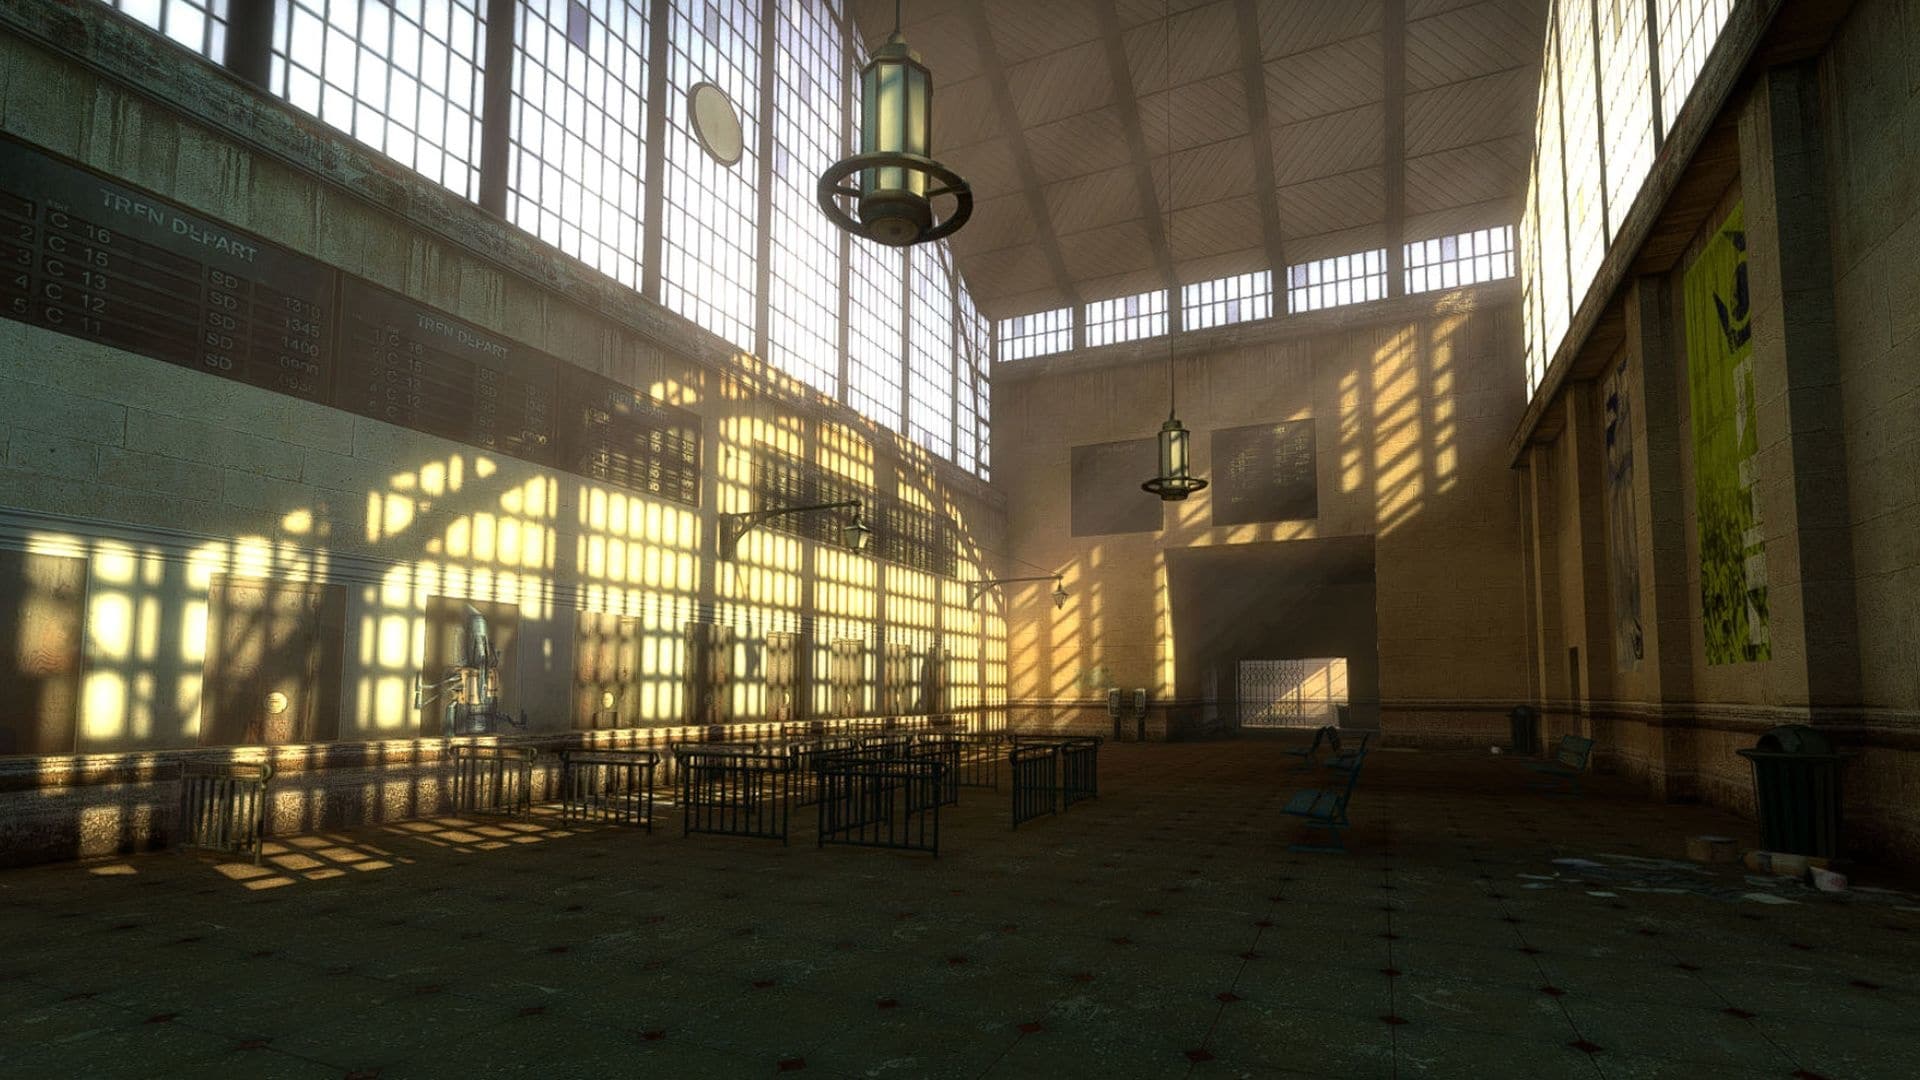 (Para el futuro, el equipo del mod ha prometido una actualización de los gráficos además de la implementación de los episodios de Half-Life, que debería optimizar las texturas y la iluminación algo anticuada del juego, entre otras cosas)